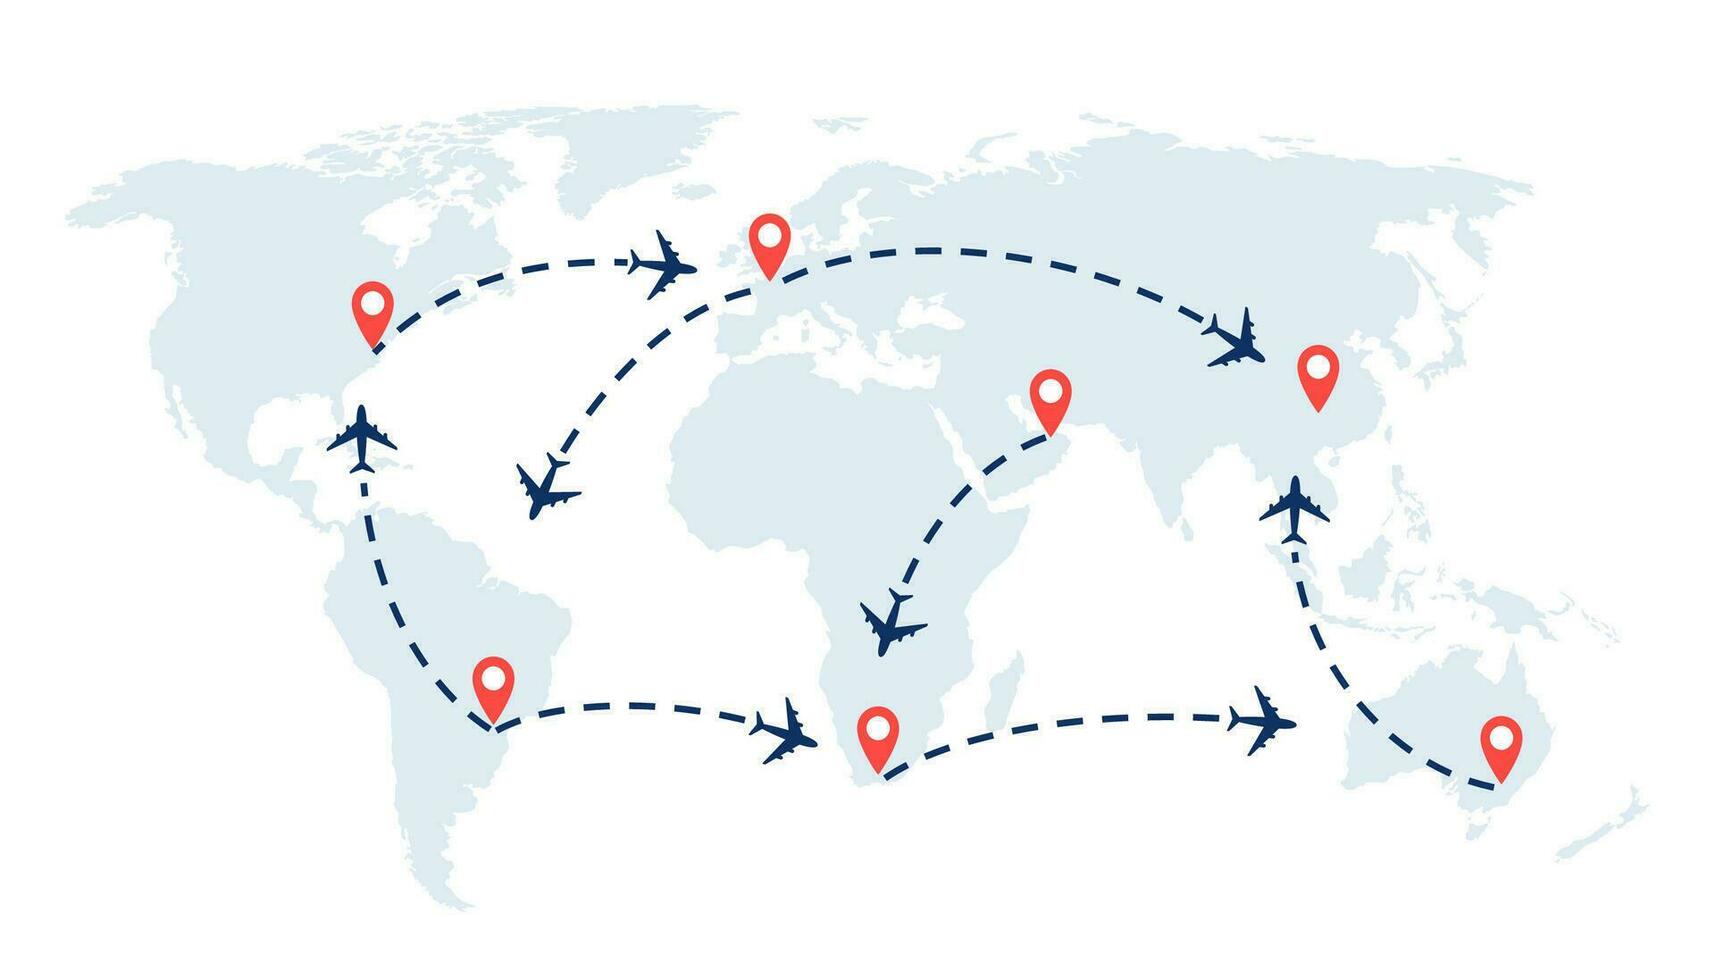 mundo viagem mapa com aviões, voar rotas e alfinetes marcador. vetor ilustração.